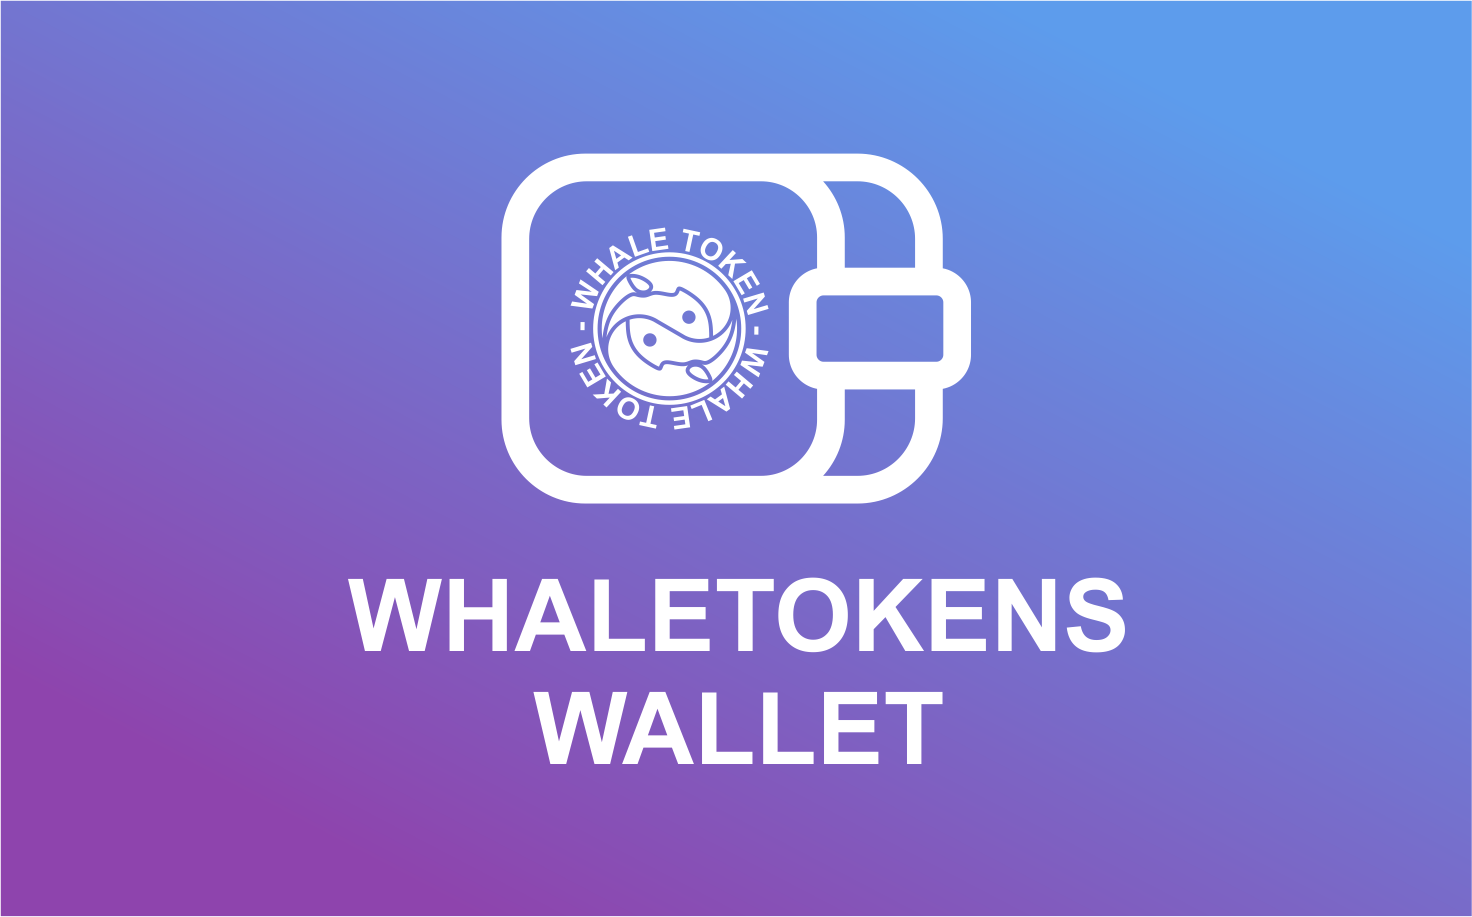 whaletoken-wallet-app-design.png